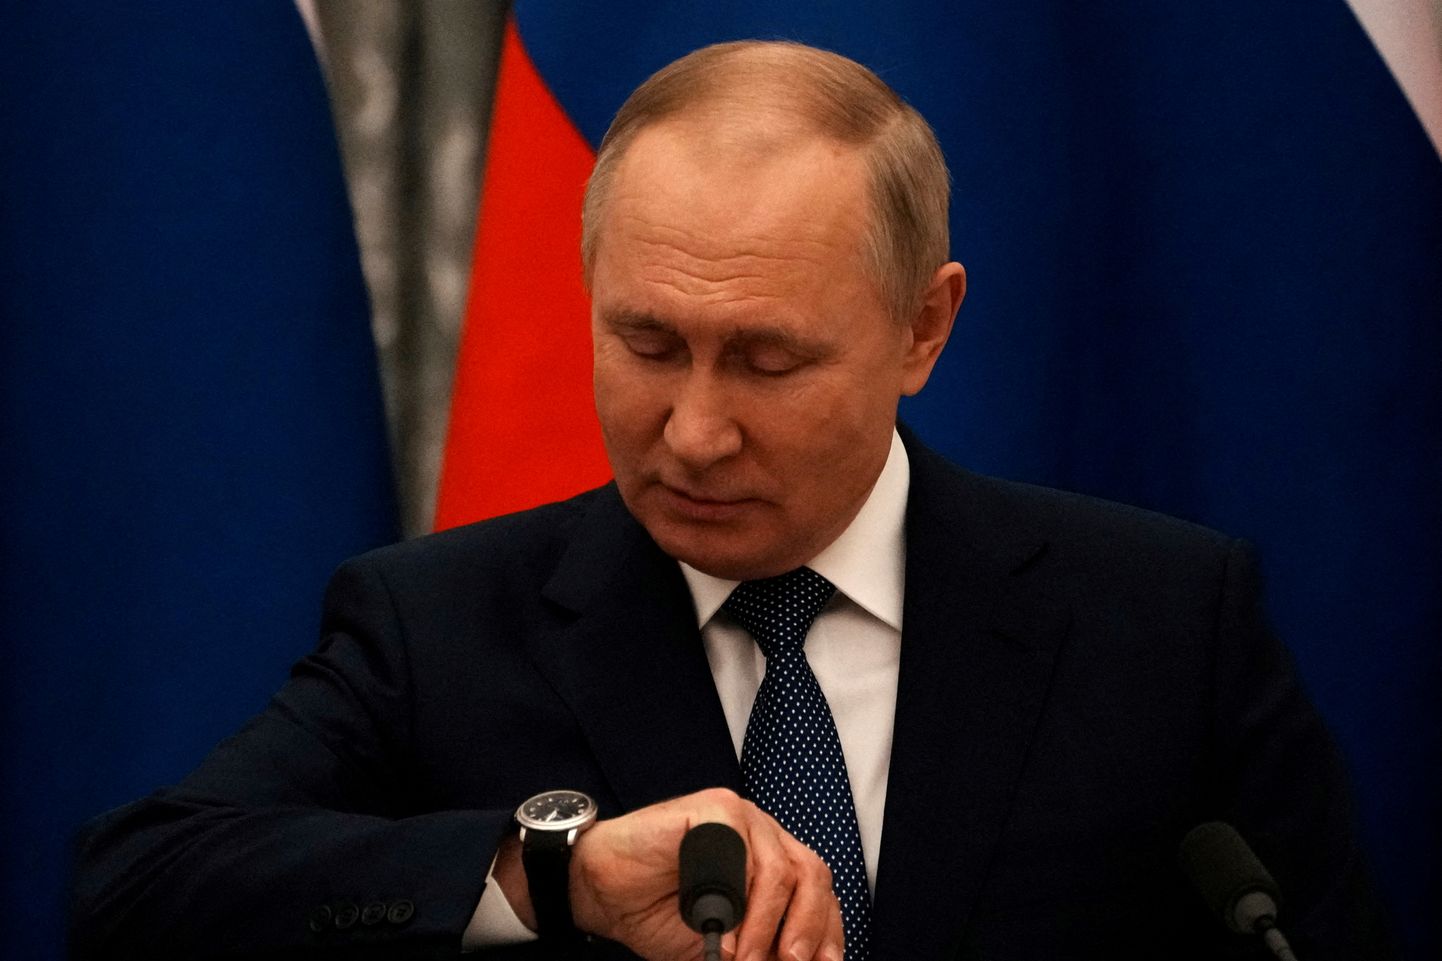 Venemaa president Vladimir Putin vaatamas 7. veebruaril 2022 Moksvas Kremlis kella ühisel pressikonverentsil Prantsuse presidendi Emmanuel Macroniga